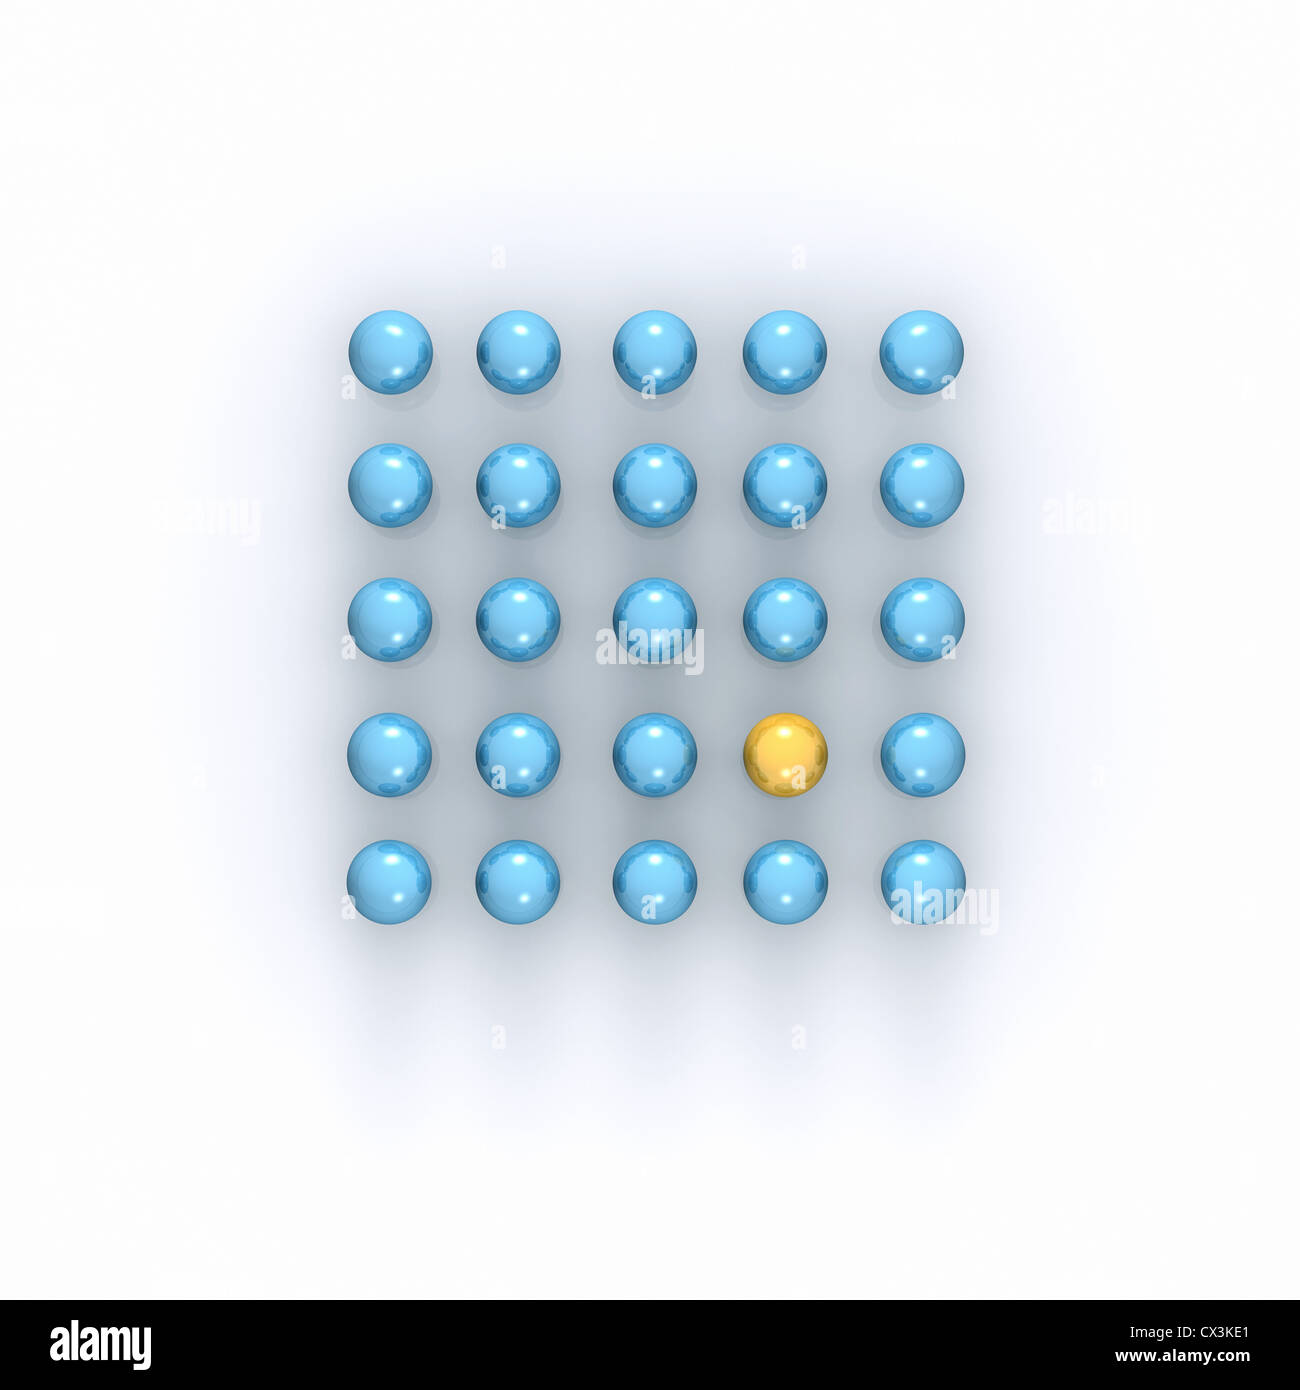 Carré de boules bleues, est jaune - Quadrat aus 25 blauen Kugeln, ist eine gelb - Banque D'Images